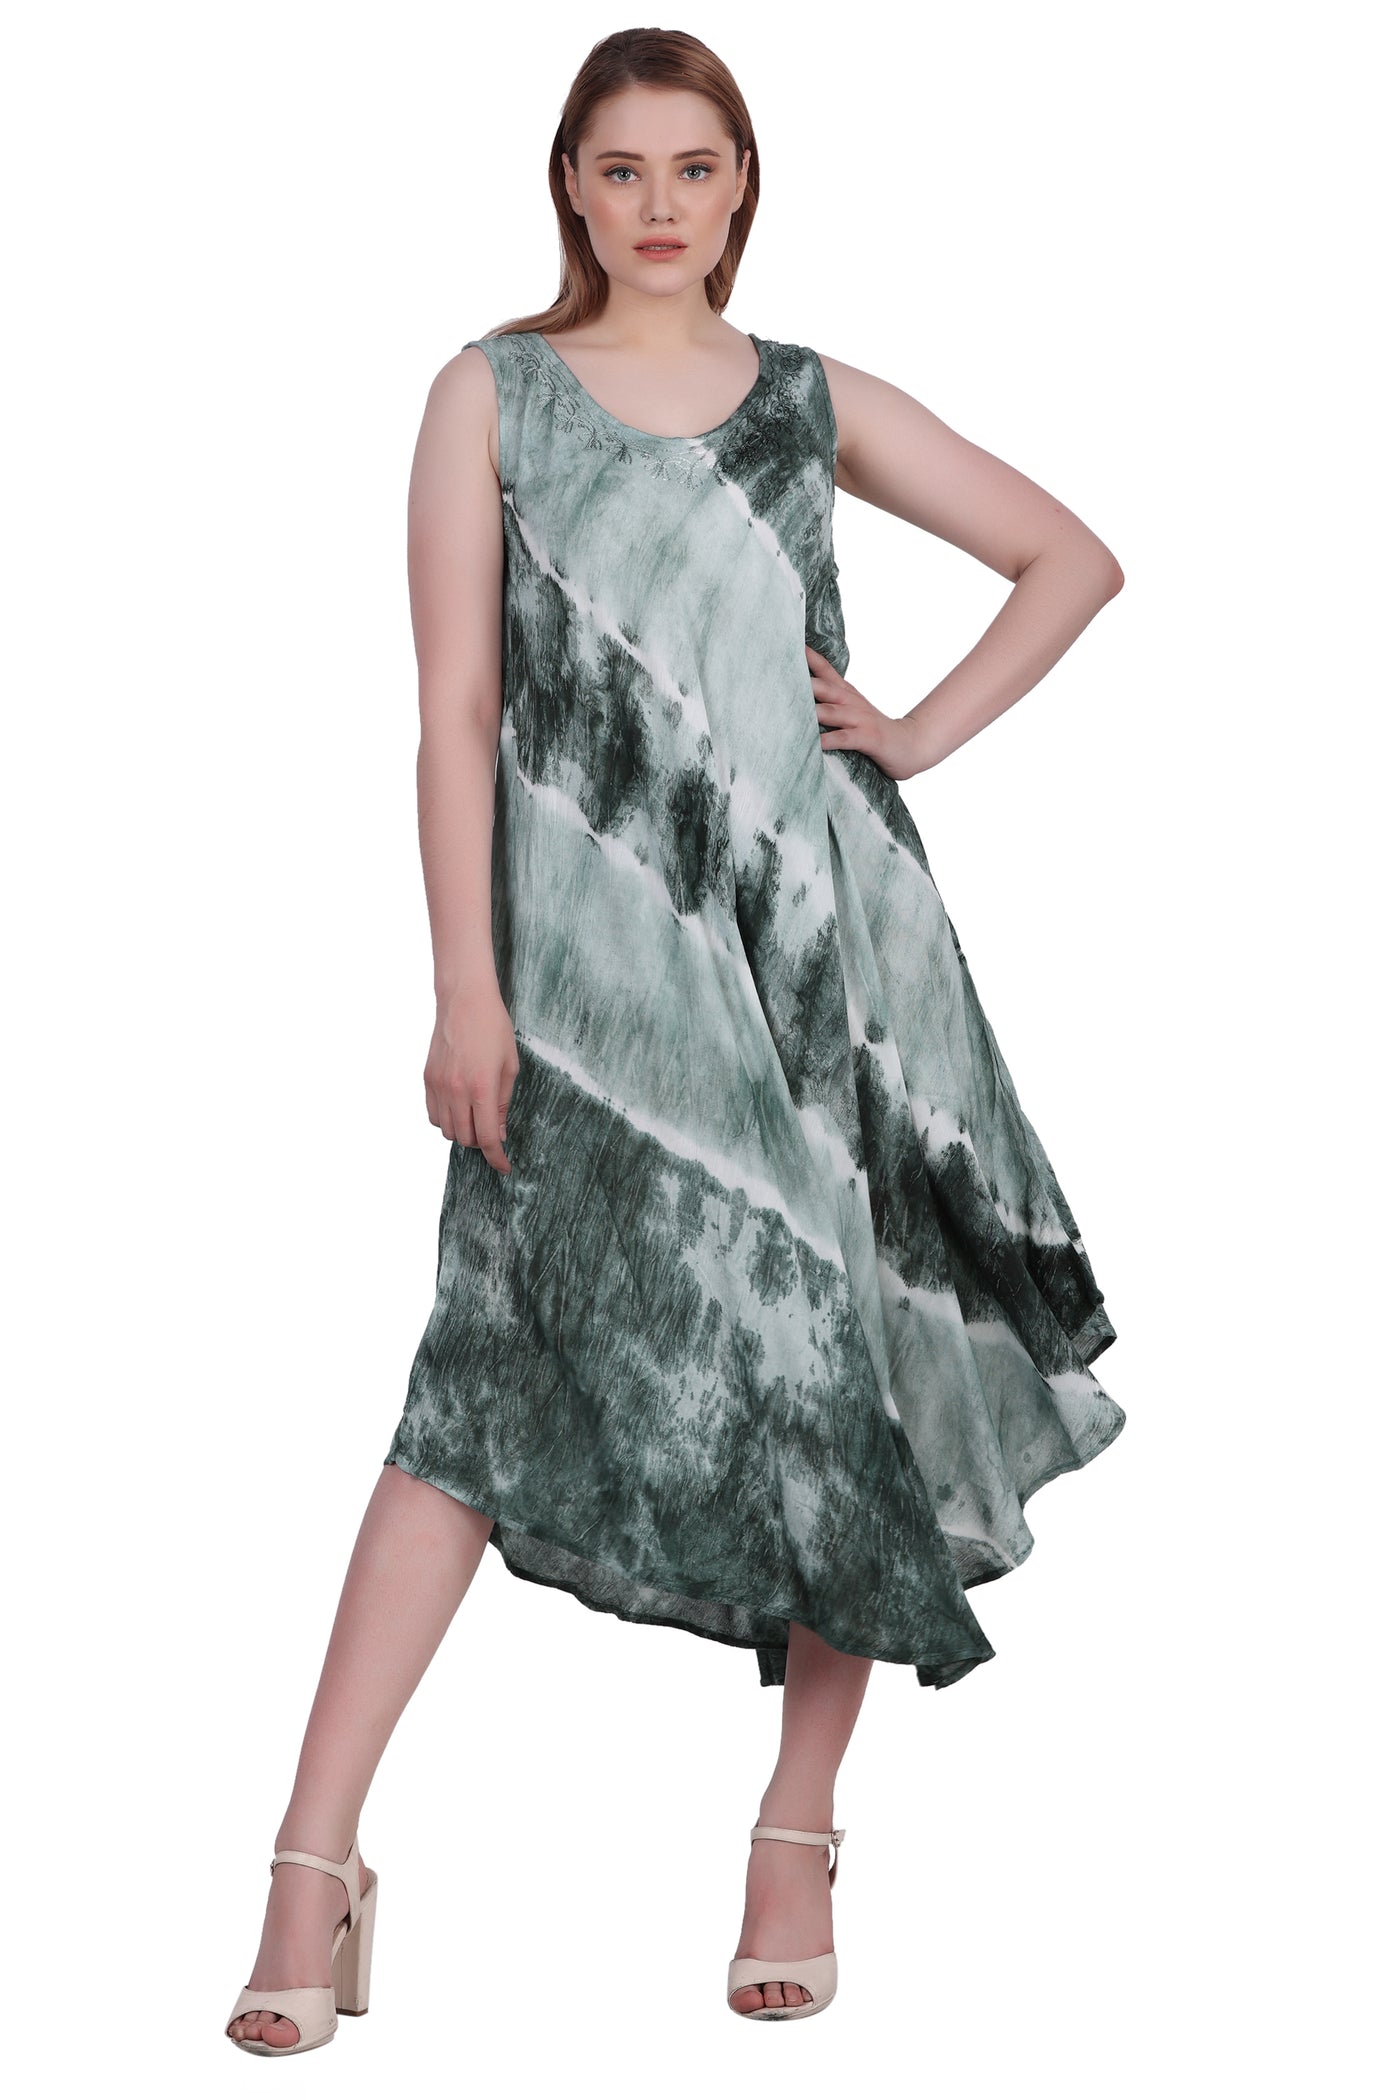 Wide Strap Tie Dye Sleeveless Dress 522184